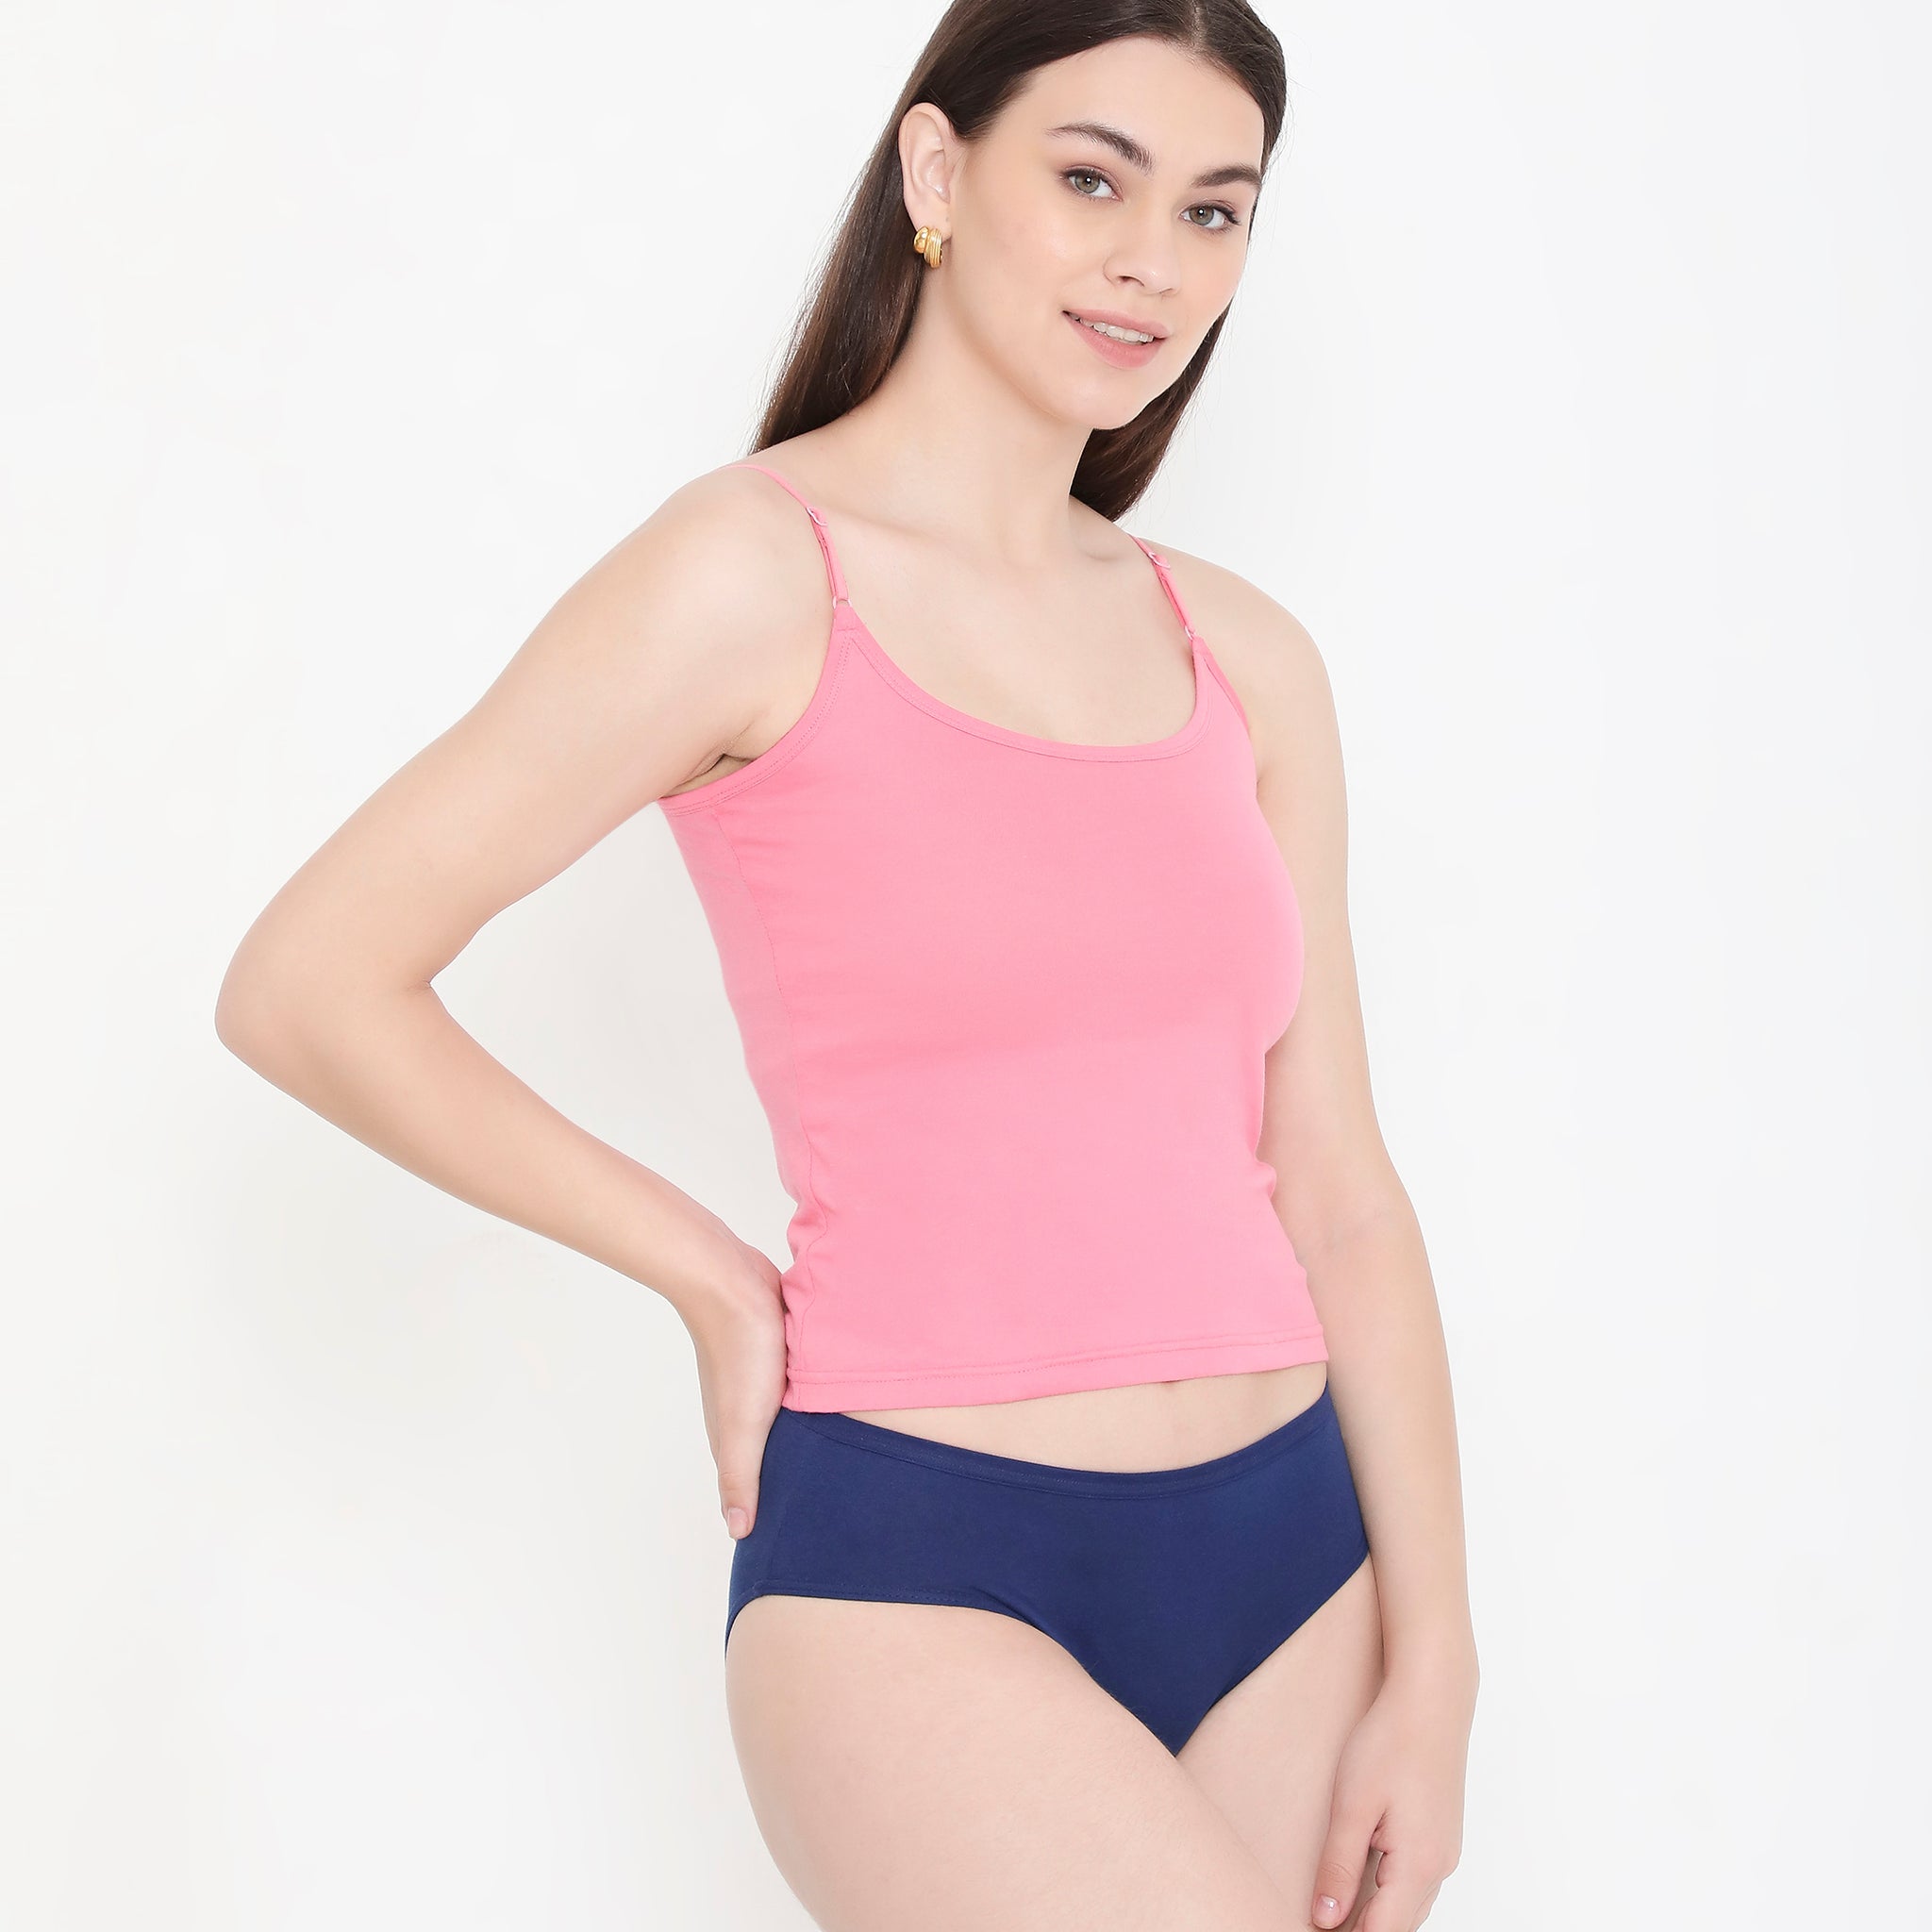 Women 100% Soft Cotton Innerwear Camisole with Adjustable Straps - Pink